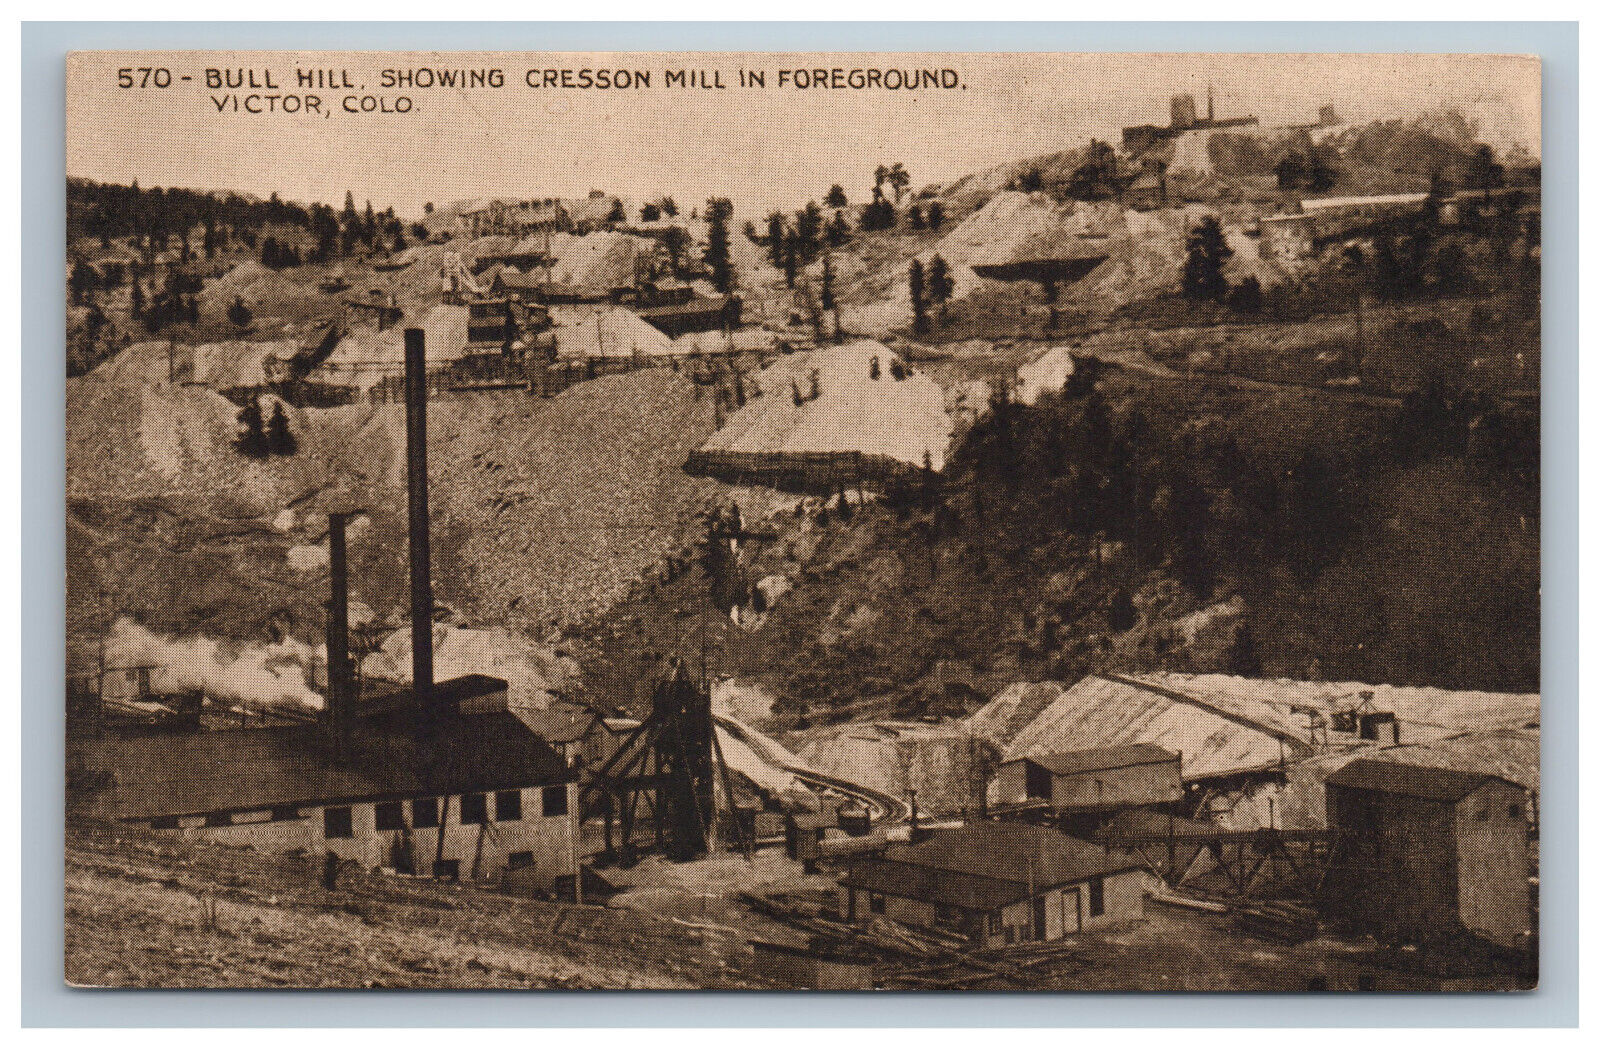 Victor Colorado Bull Hill Cresson Mill Sepia Tone Postcard Gold Mining